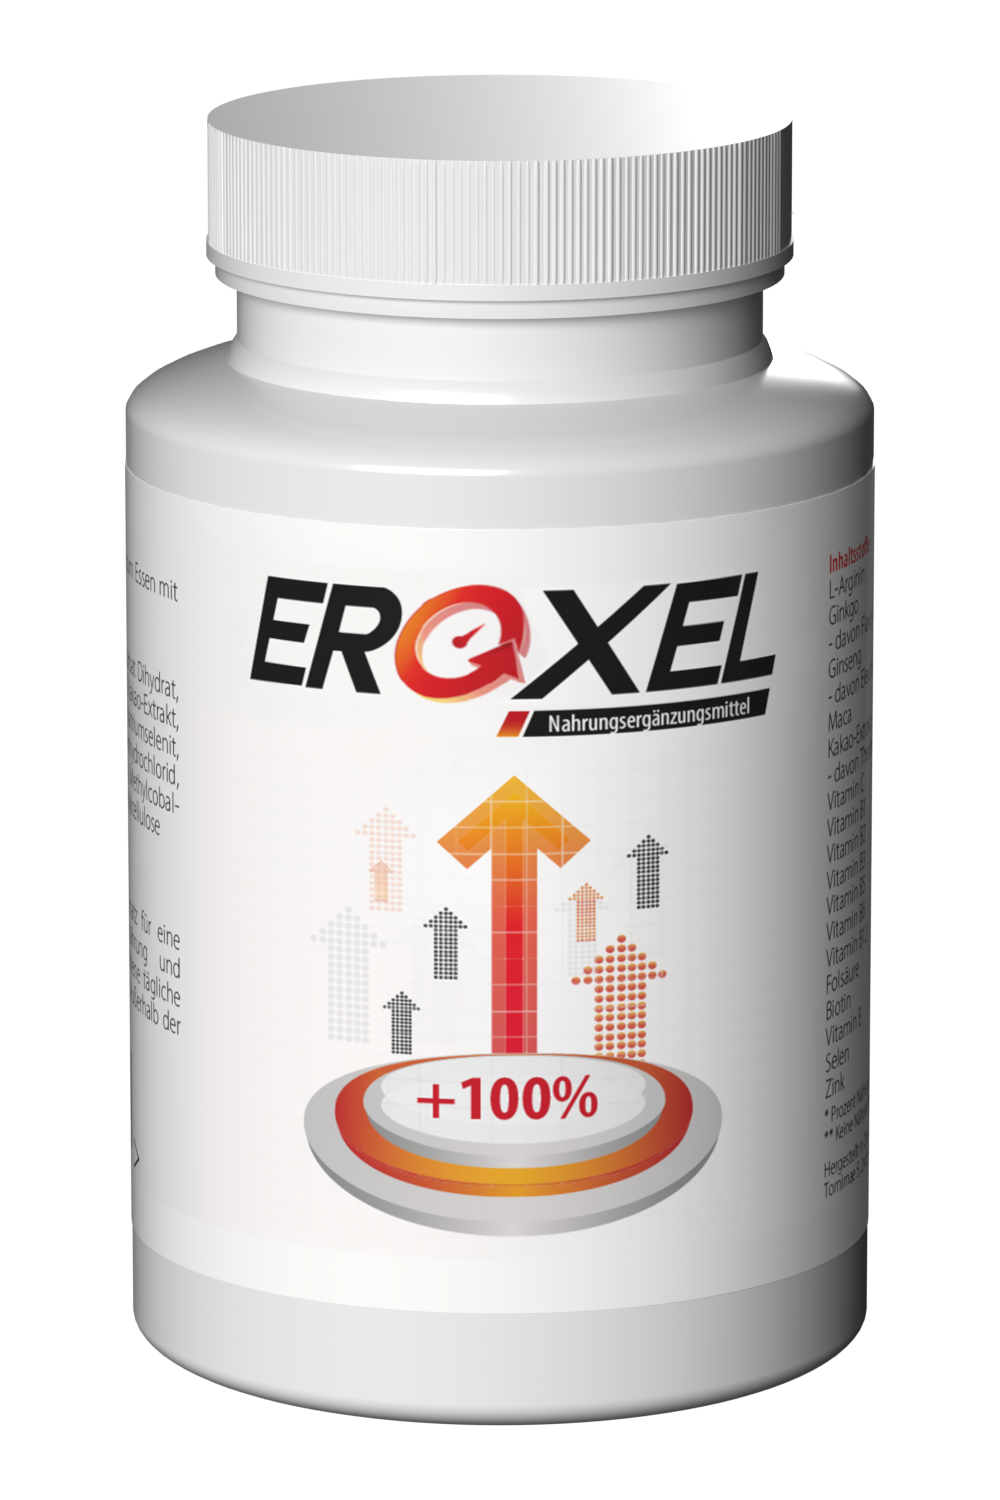 EroxelForte1 Scheda Tecnica